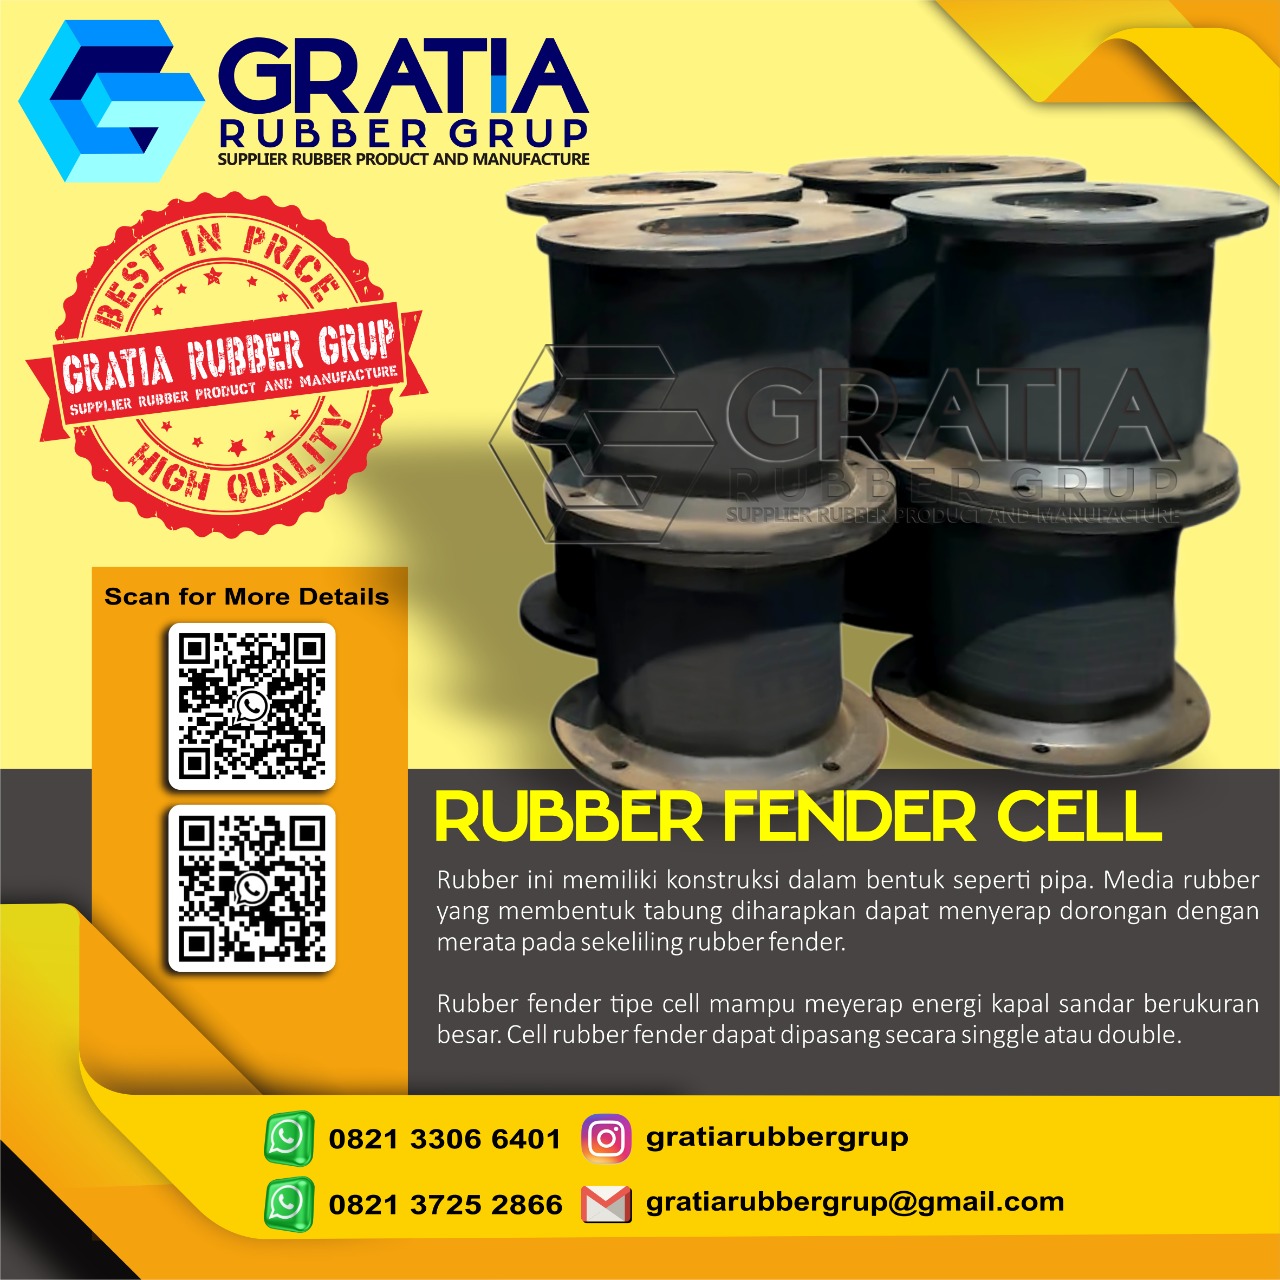 Distributor Rubber Fender Terlengkap  Melayani Pengiriman Ke Jakarta Timur Hub 0821 3306 0461